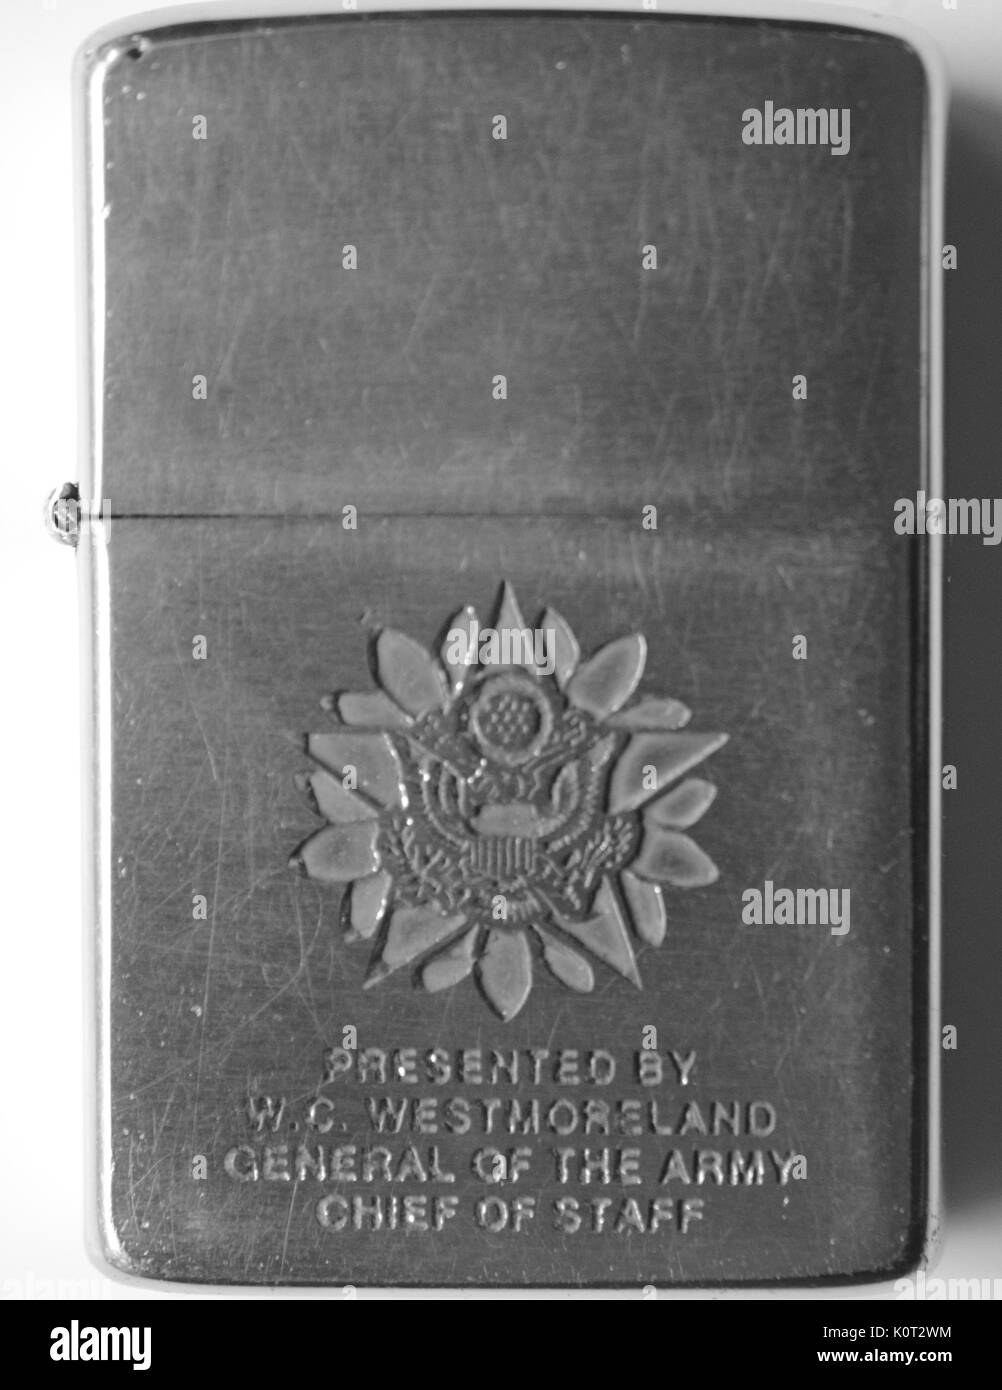 Zigarettenanzünder durch General der Armee und der Stabschef William Westmoreland während des Vietnam Krieges präsentiert, mit der Dichtung der United States Army, 1965 eingraviert. Stockfoto